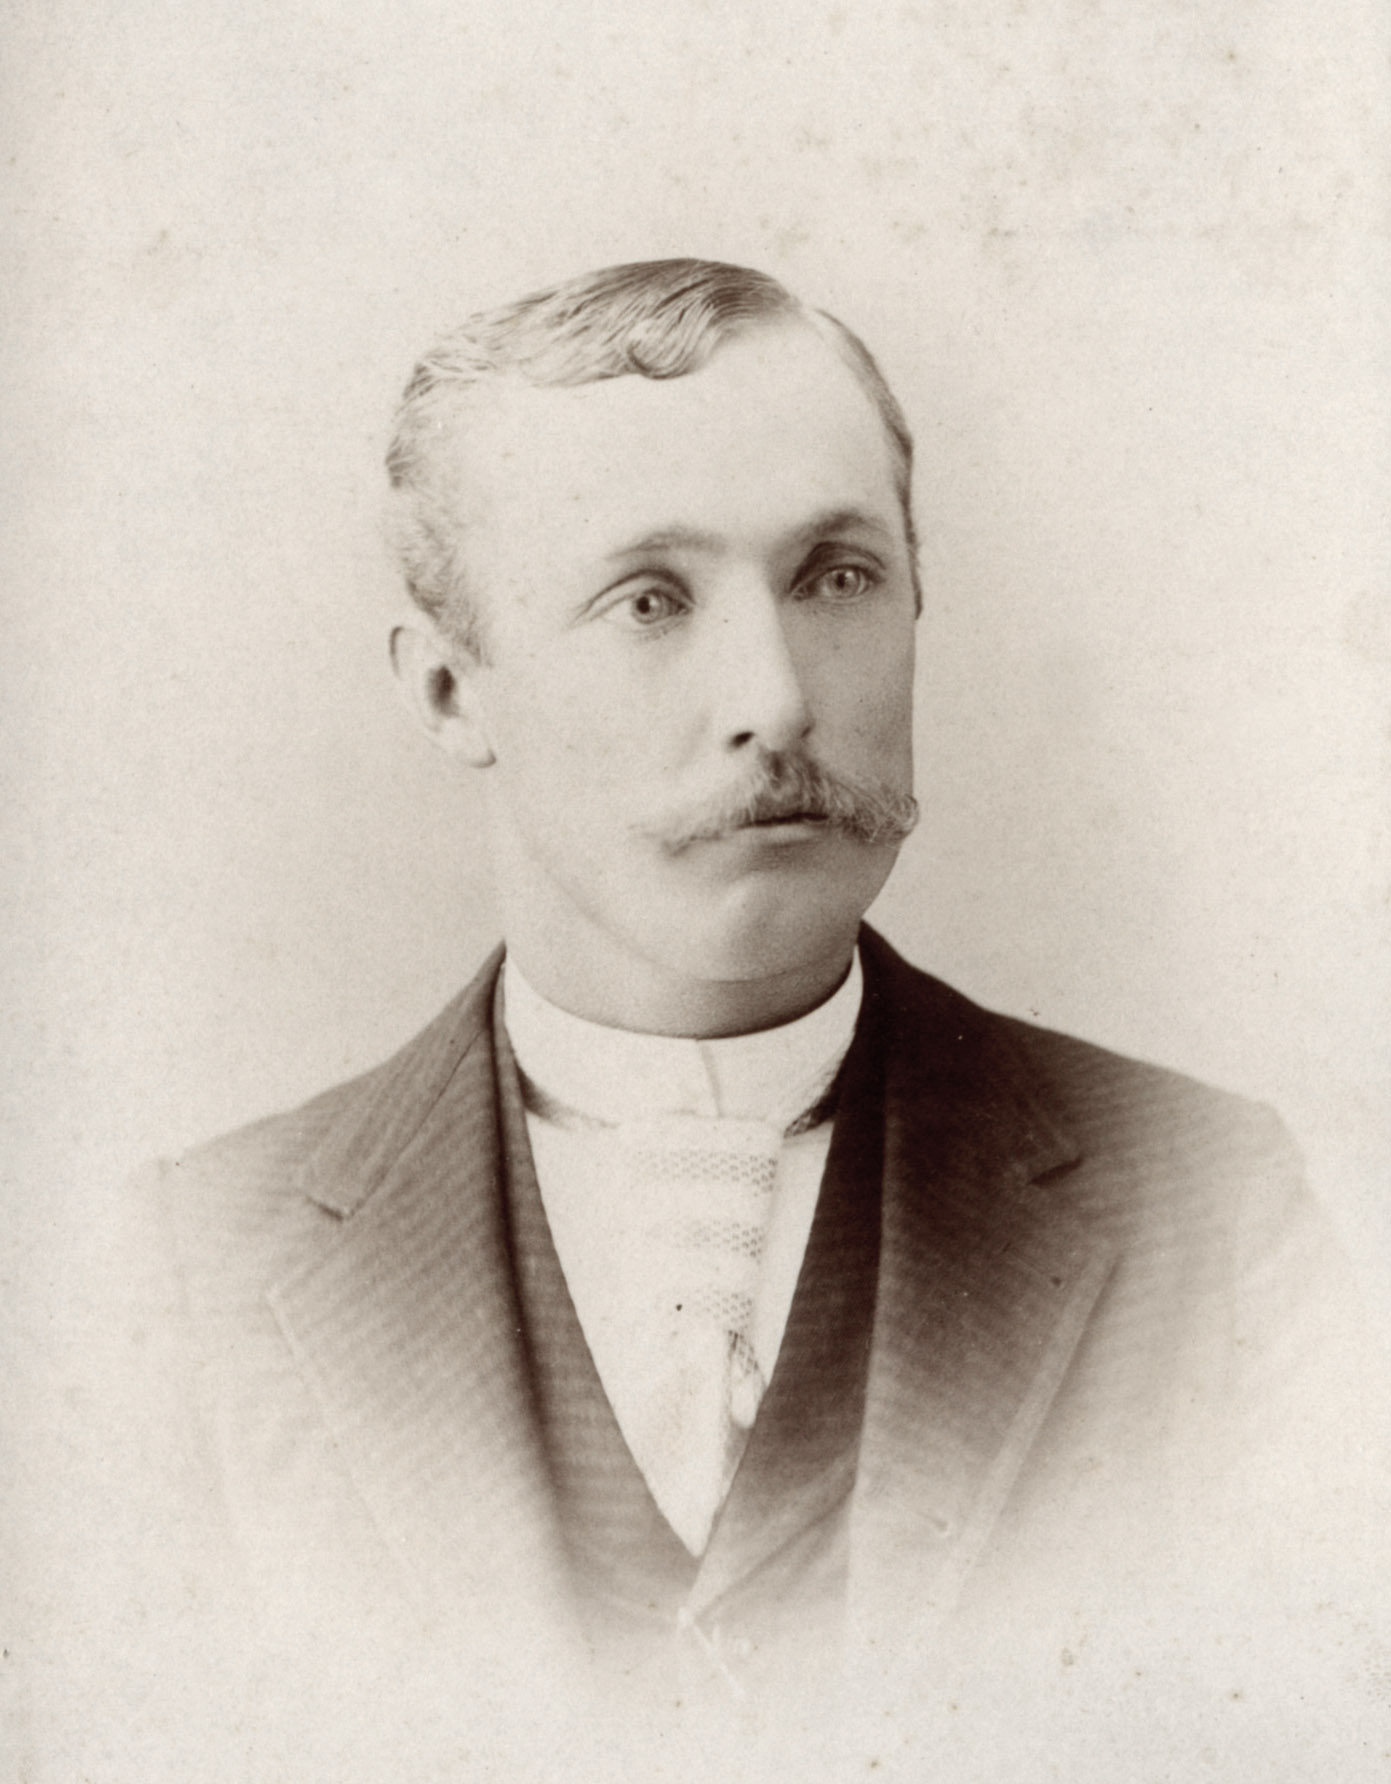 William Gowen around 1893